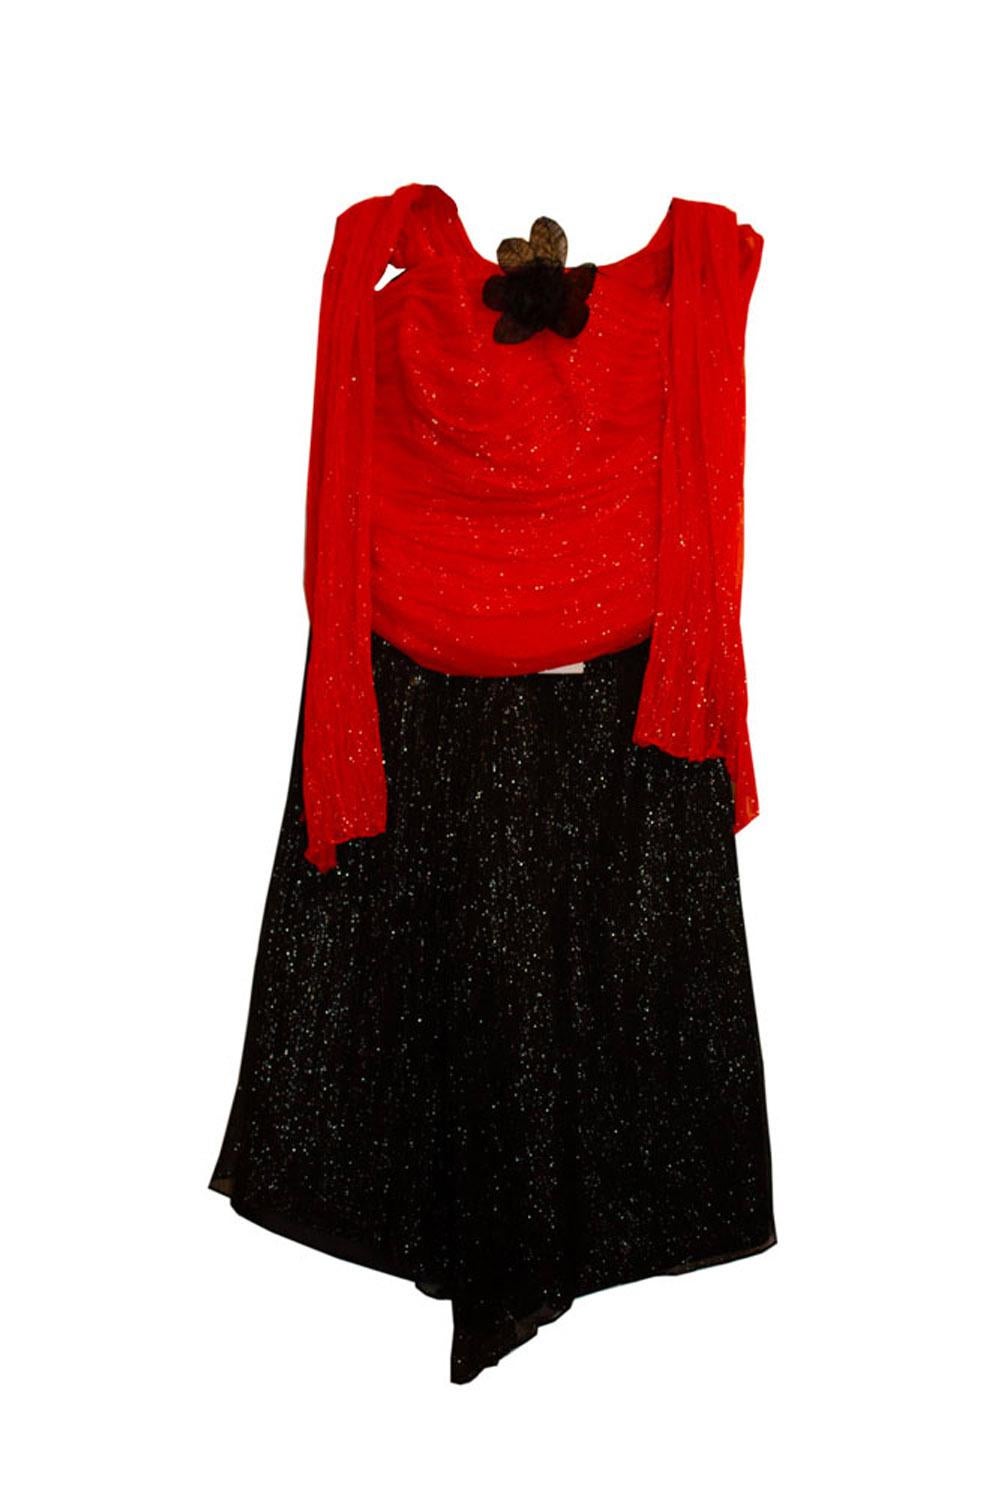 Ein tolles Vintage-Outfit von Helen Hutton.
Das Outfit besteht aus einem Paar schwarzer Abendshorts / kurzer Hosen mit kontrastierenden  Mieder  (mit Stäbchen), und einem passenden Schal. 
Maße: Hose: Taille 28'', Innenbein 20'', Oberteil: